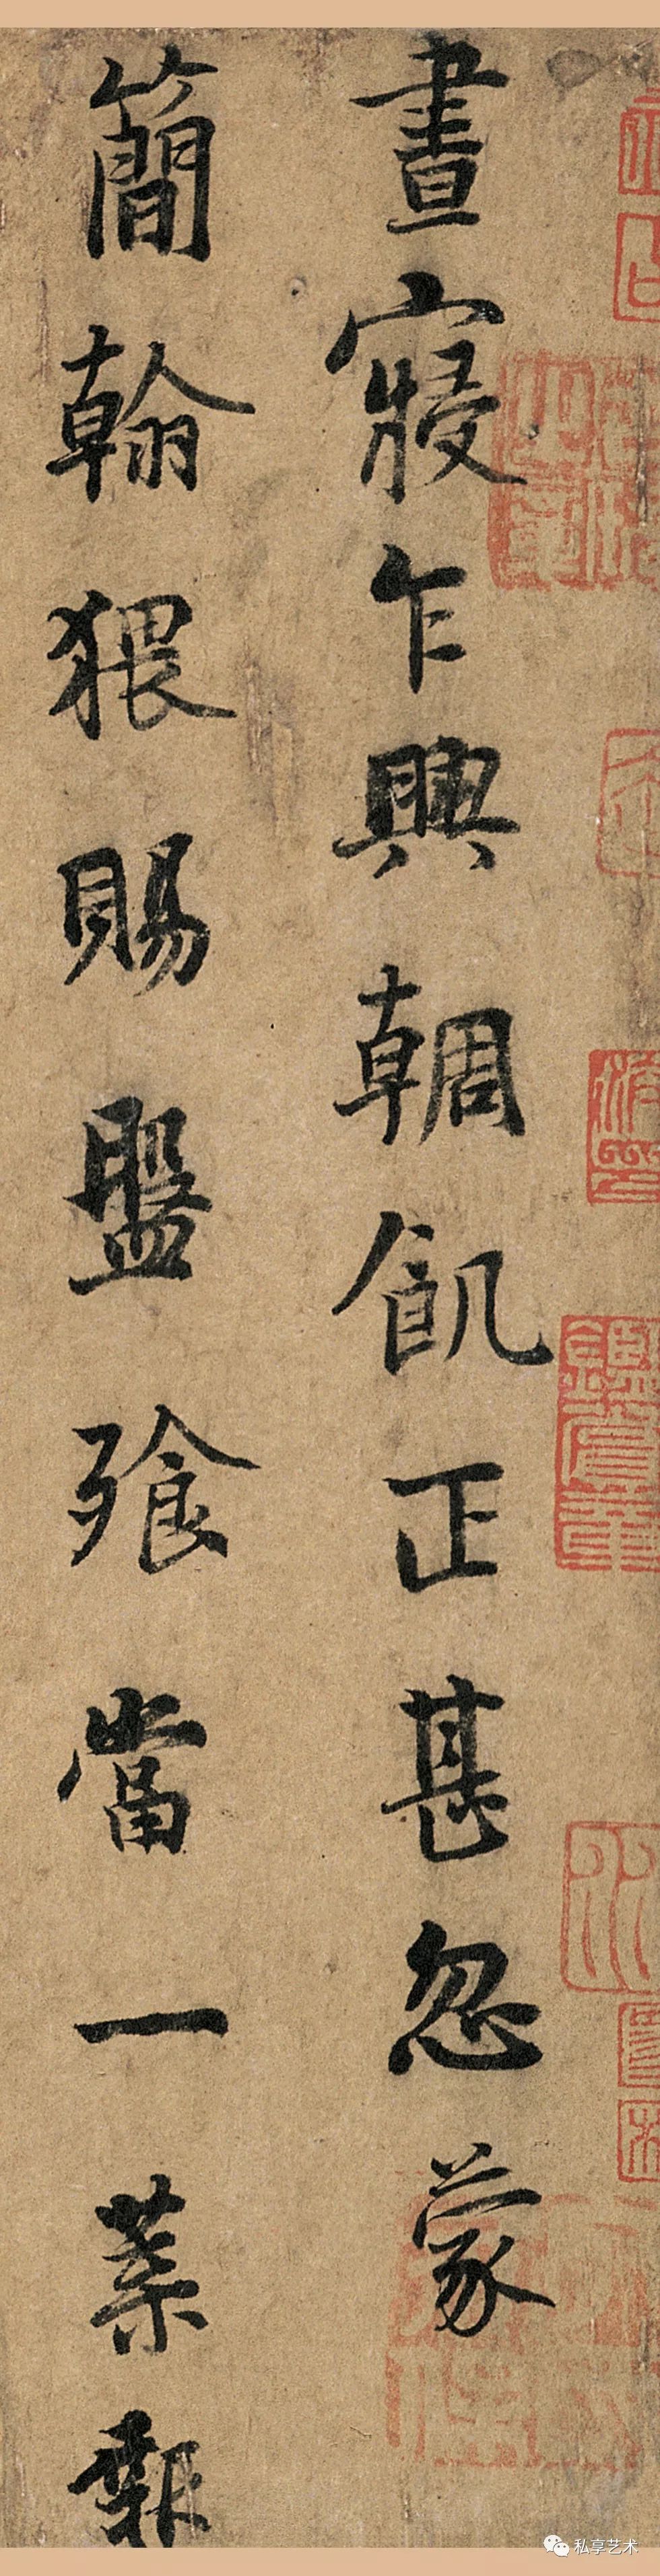 北京故宫博物院藏丨天下十大行书之一:杨凝式《韭花帖》